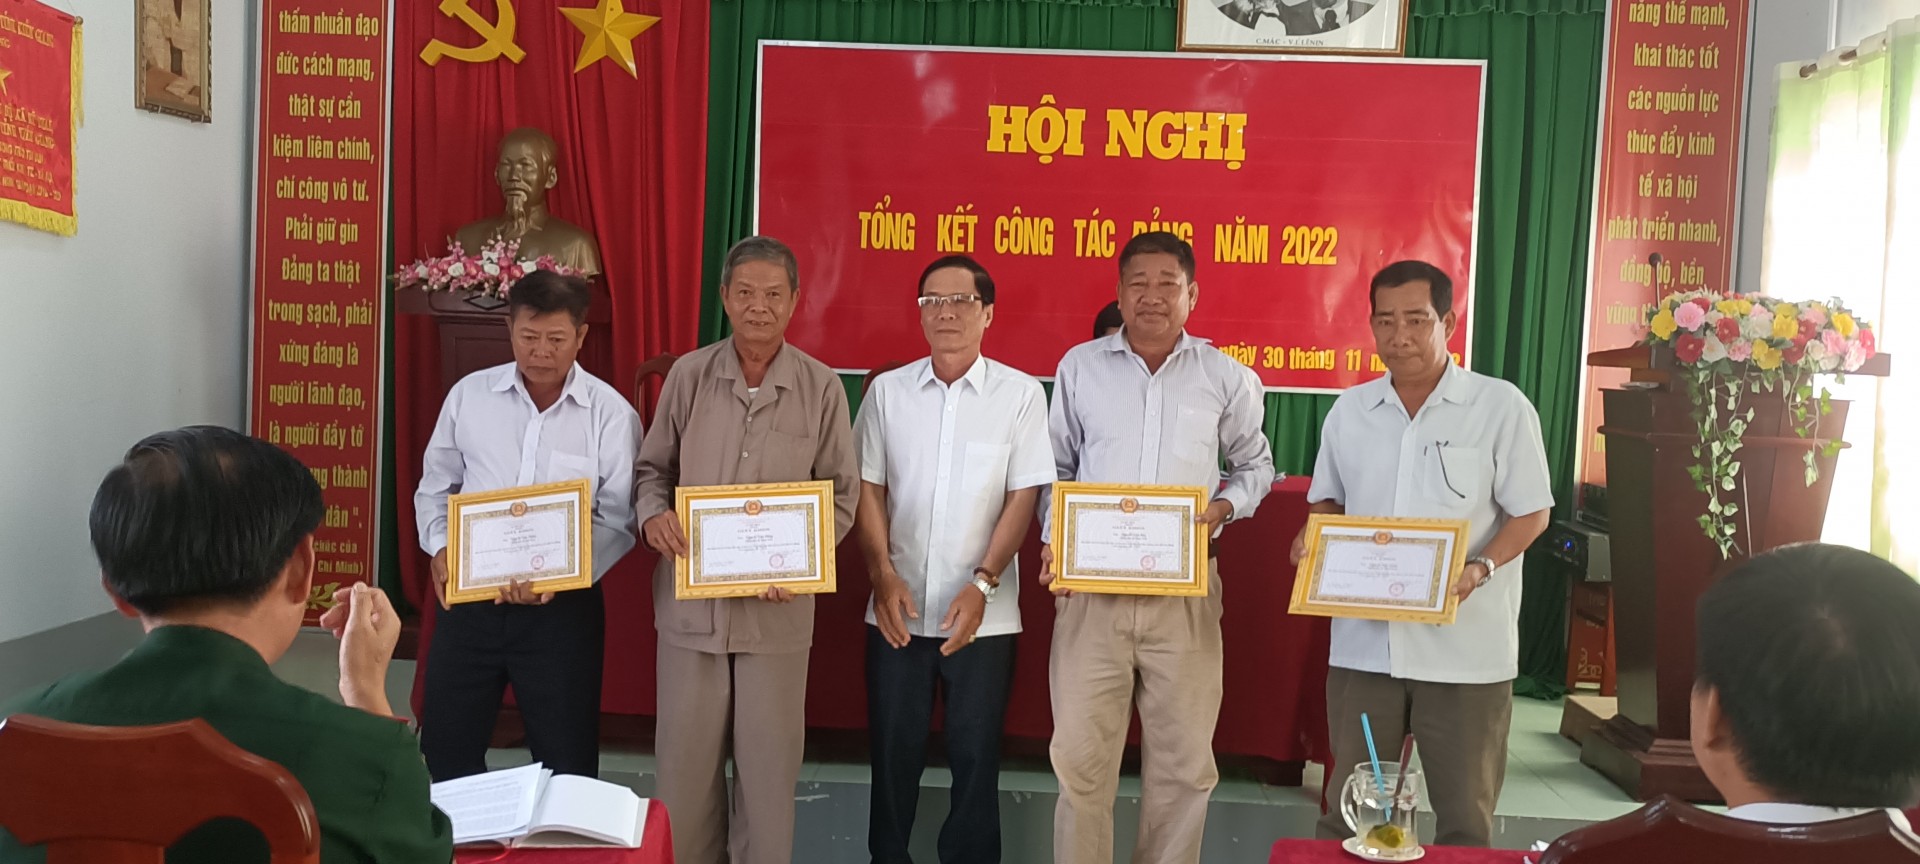 Ông Nguyễn Văn Dũng chữa bệnh cho người nghèo, làm từ thiện giúp đời